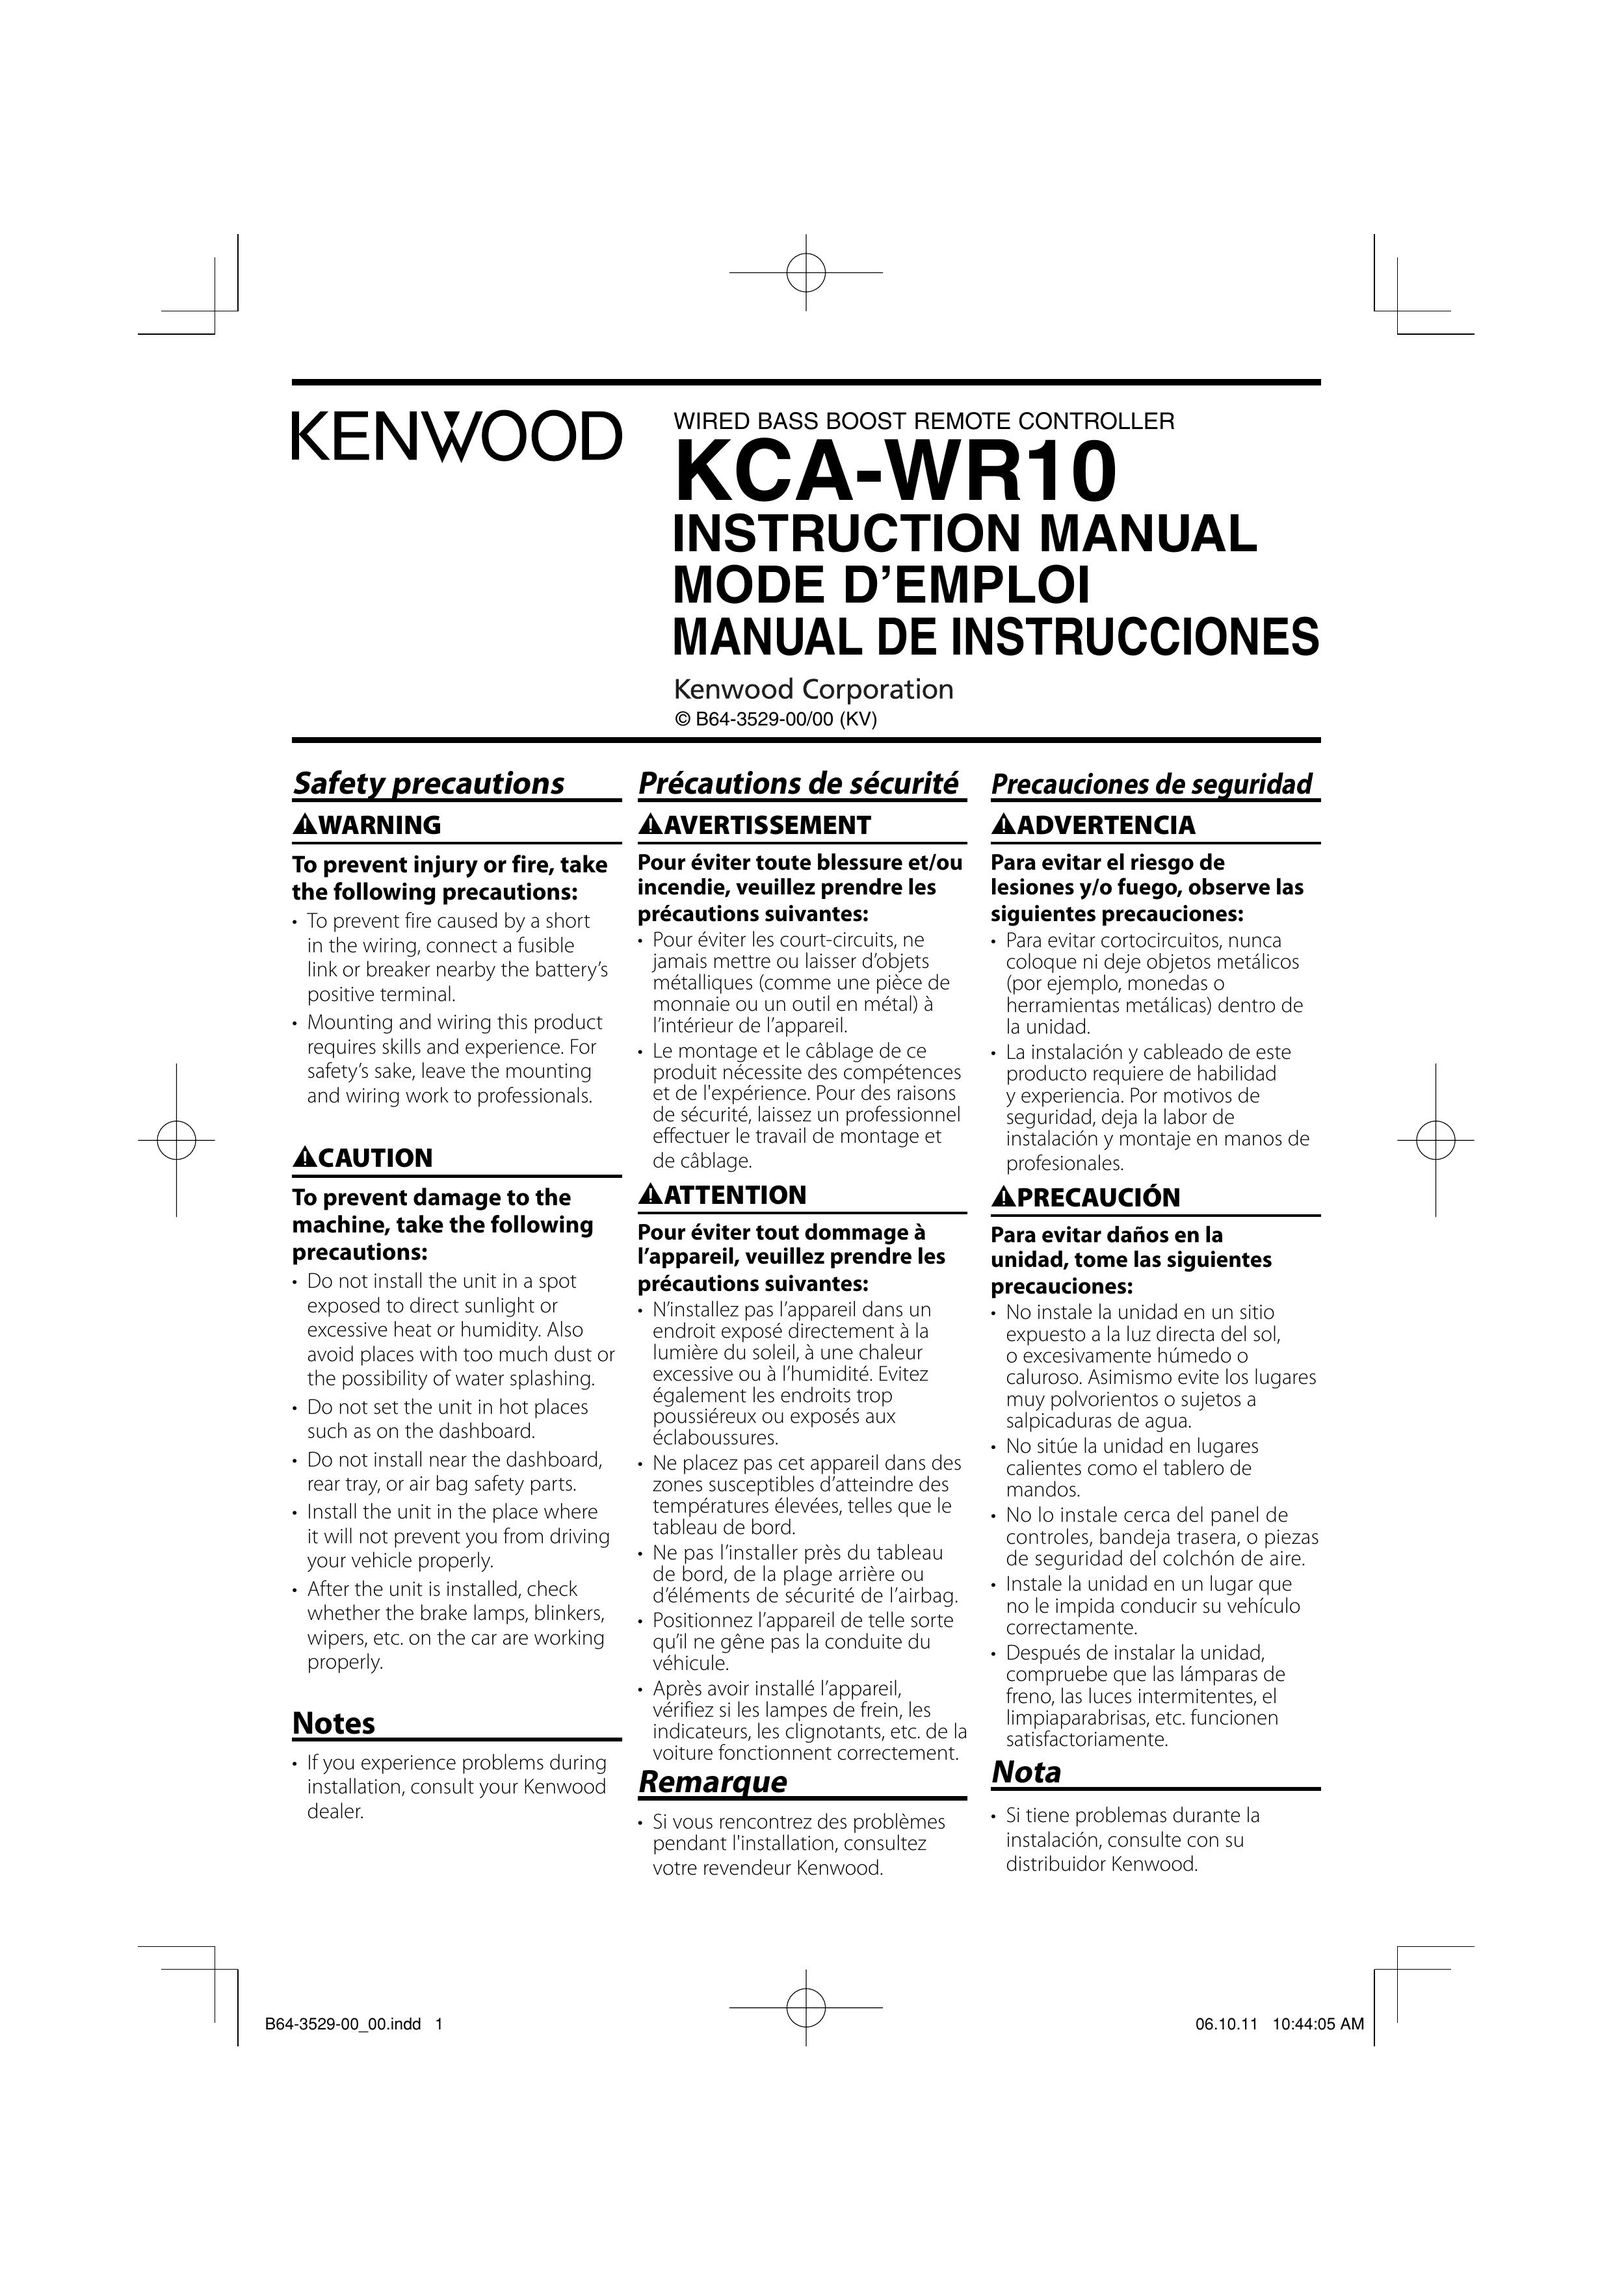 Kenwood KCA-WR10 Speaker System User Manual